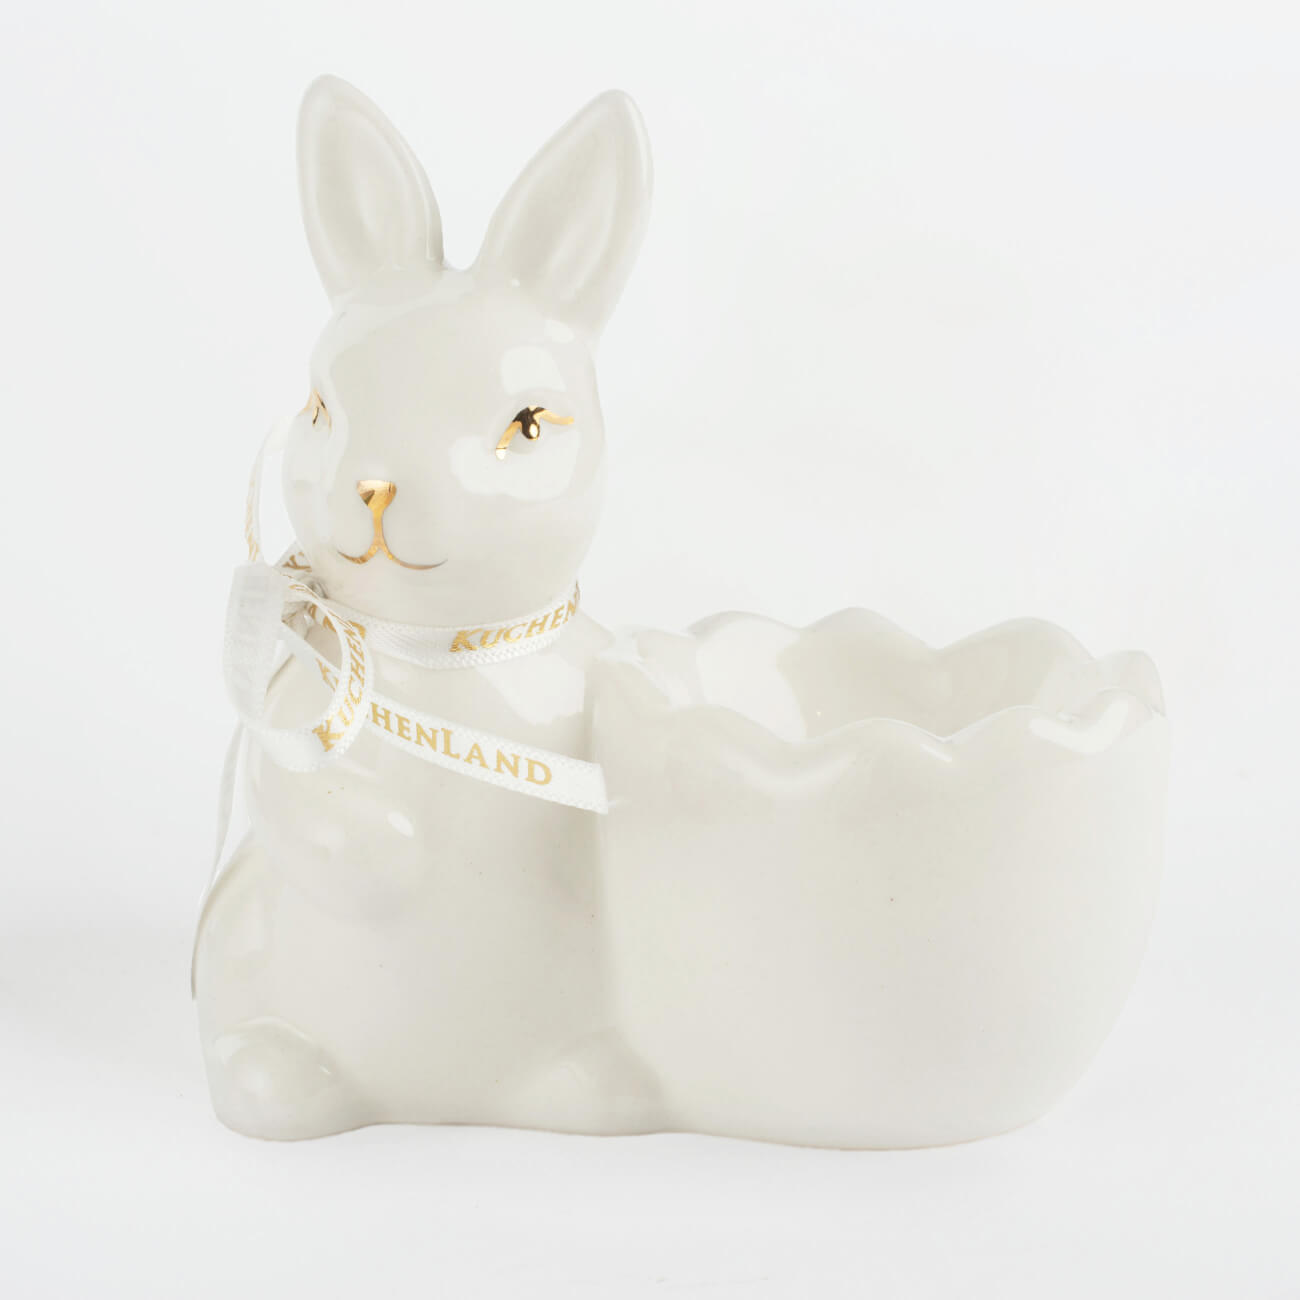 Подставка для яйца, 10 см, керамика, бело-золотистая, Кролик со скорлупкой, Easter gold подвеска декоративная 3 см керамика золотистая курица easter gold